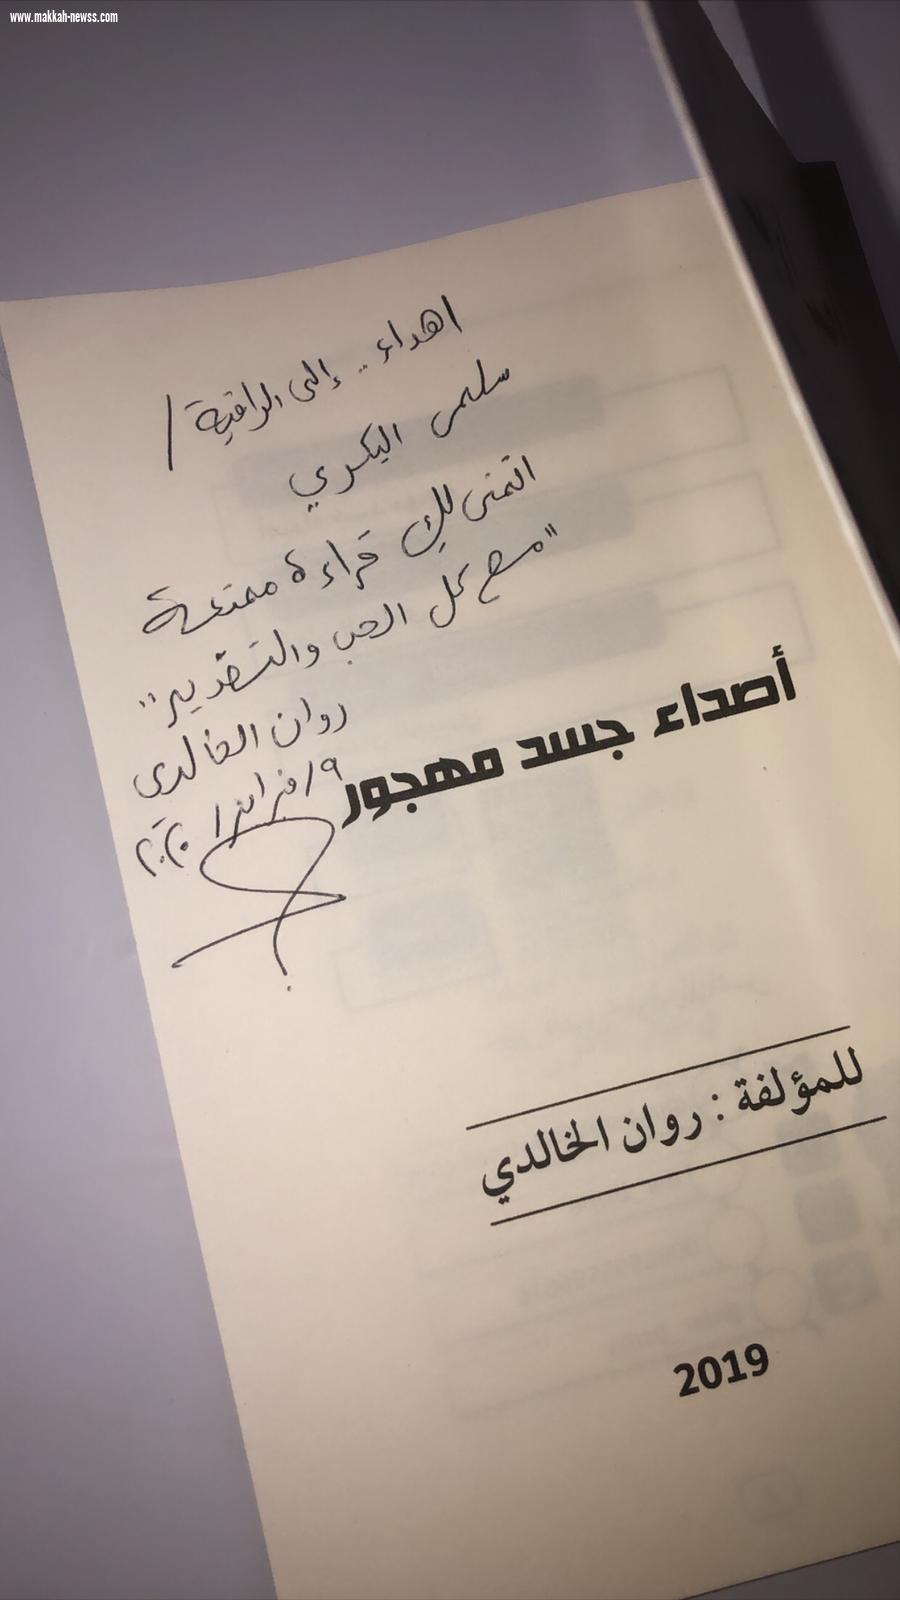 في حوار لصحيفة صوت مكة مع الكاتبة الكويتية روان الخالدي-  